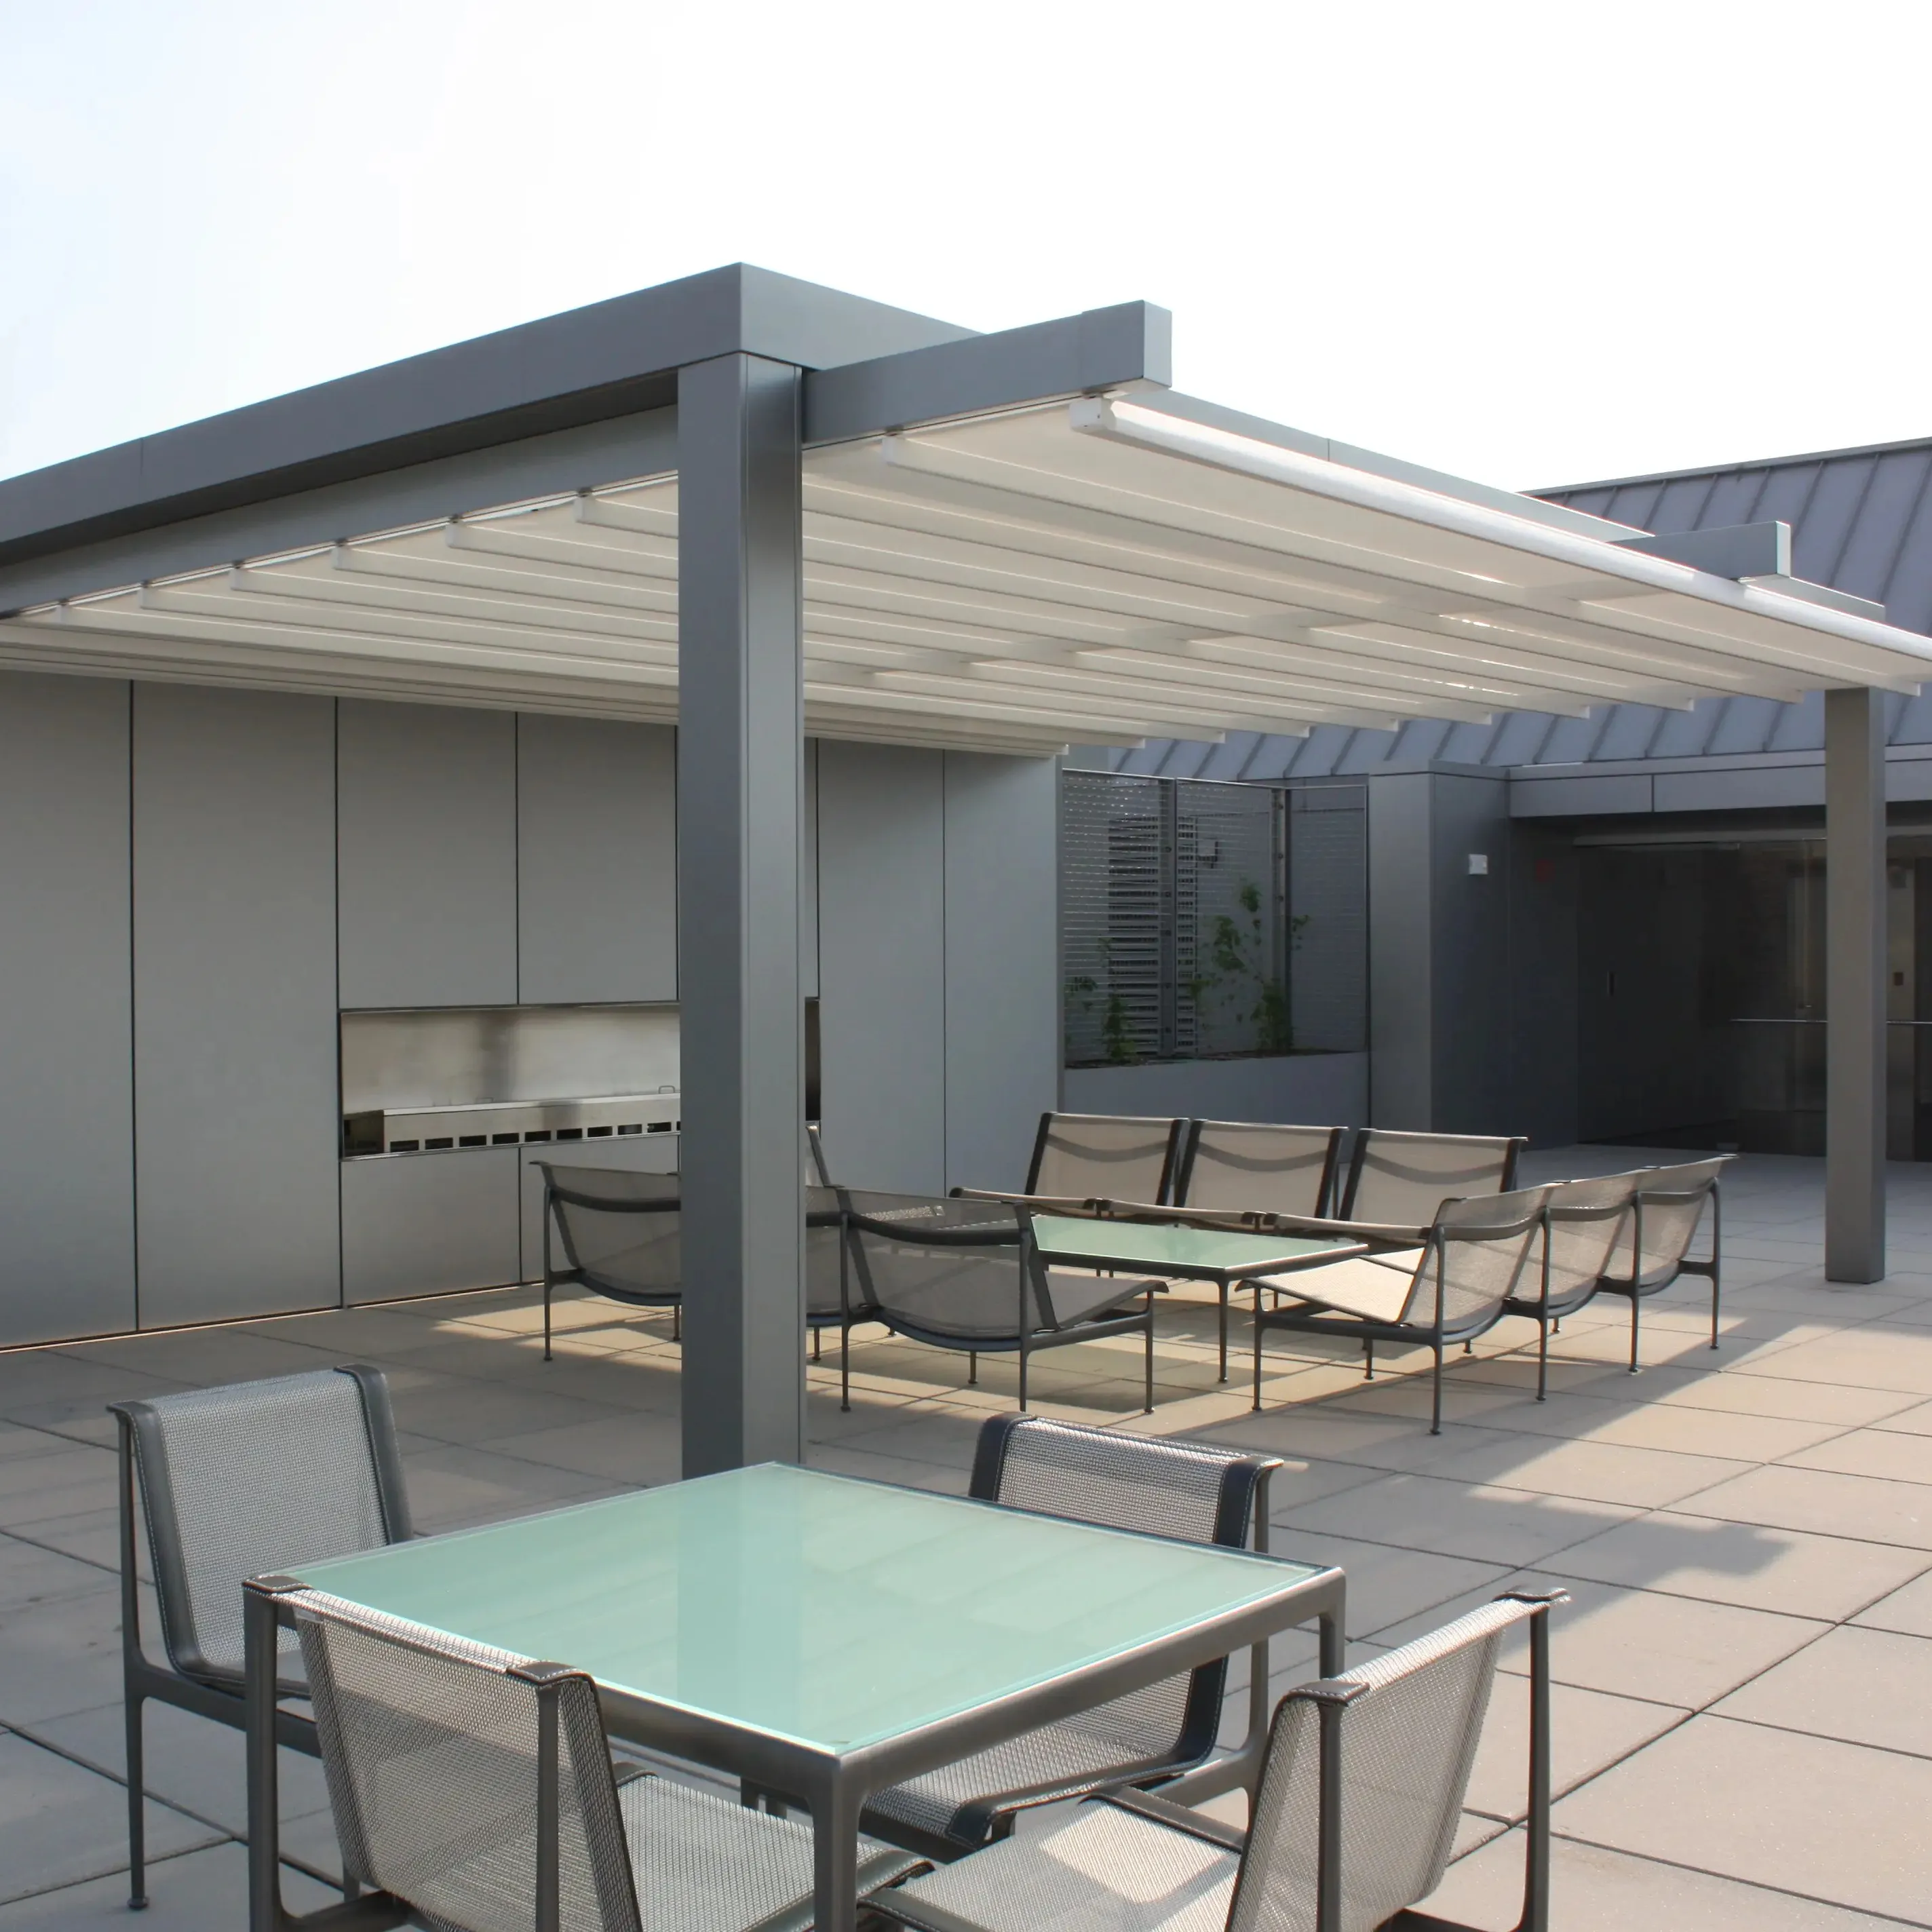 سقف مطعم من الألومنيوم بتصميم عصري قابل للطي ومظلة معدنية يمكن تقديمها بالظل لسطح الفناء والشرفة مزودة بمحرك حسب الطلب سقف يمكن إزالته